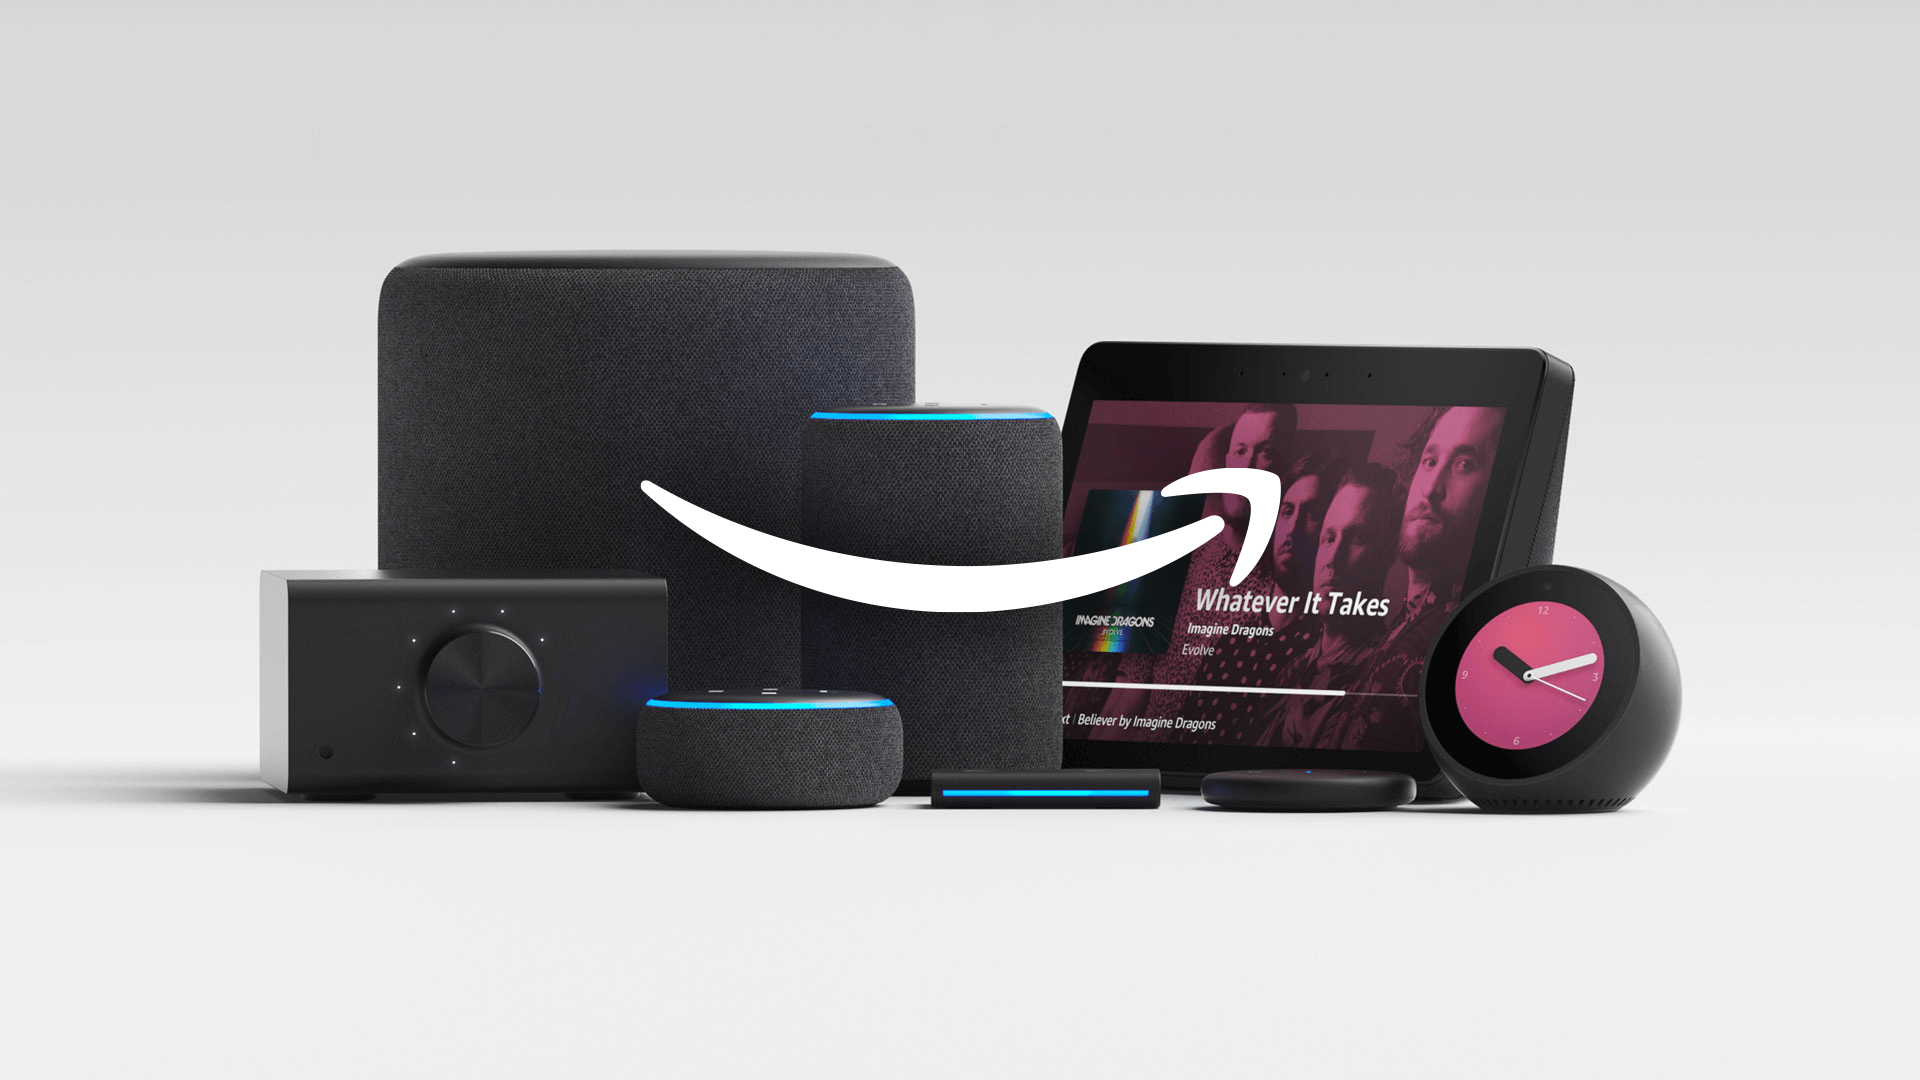 Image of Amazon Alexa devices resting behind a large amazon smile logo.